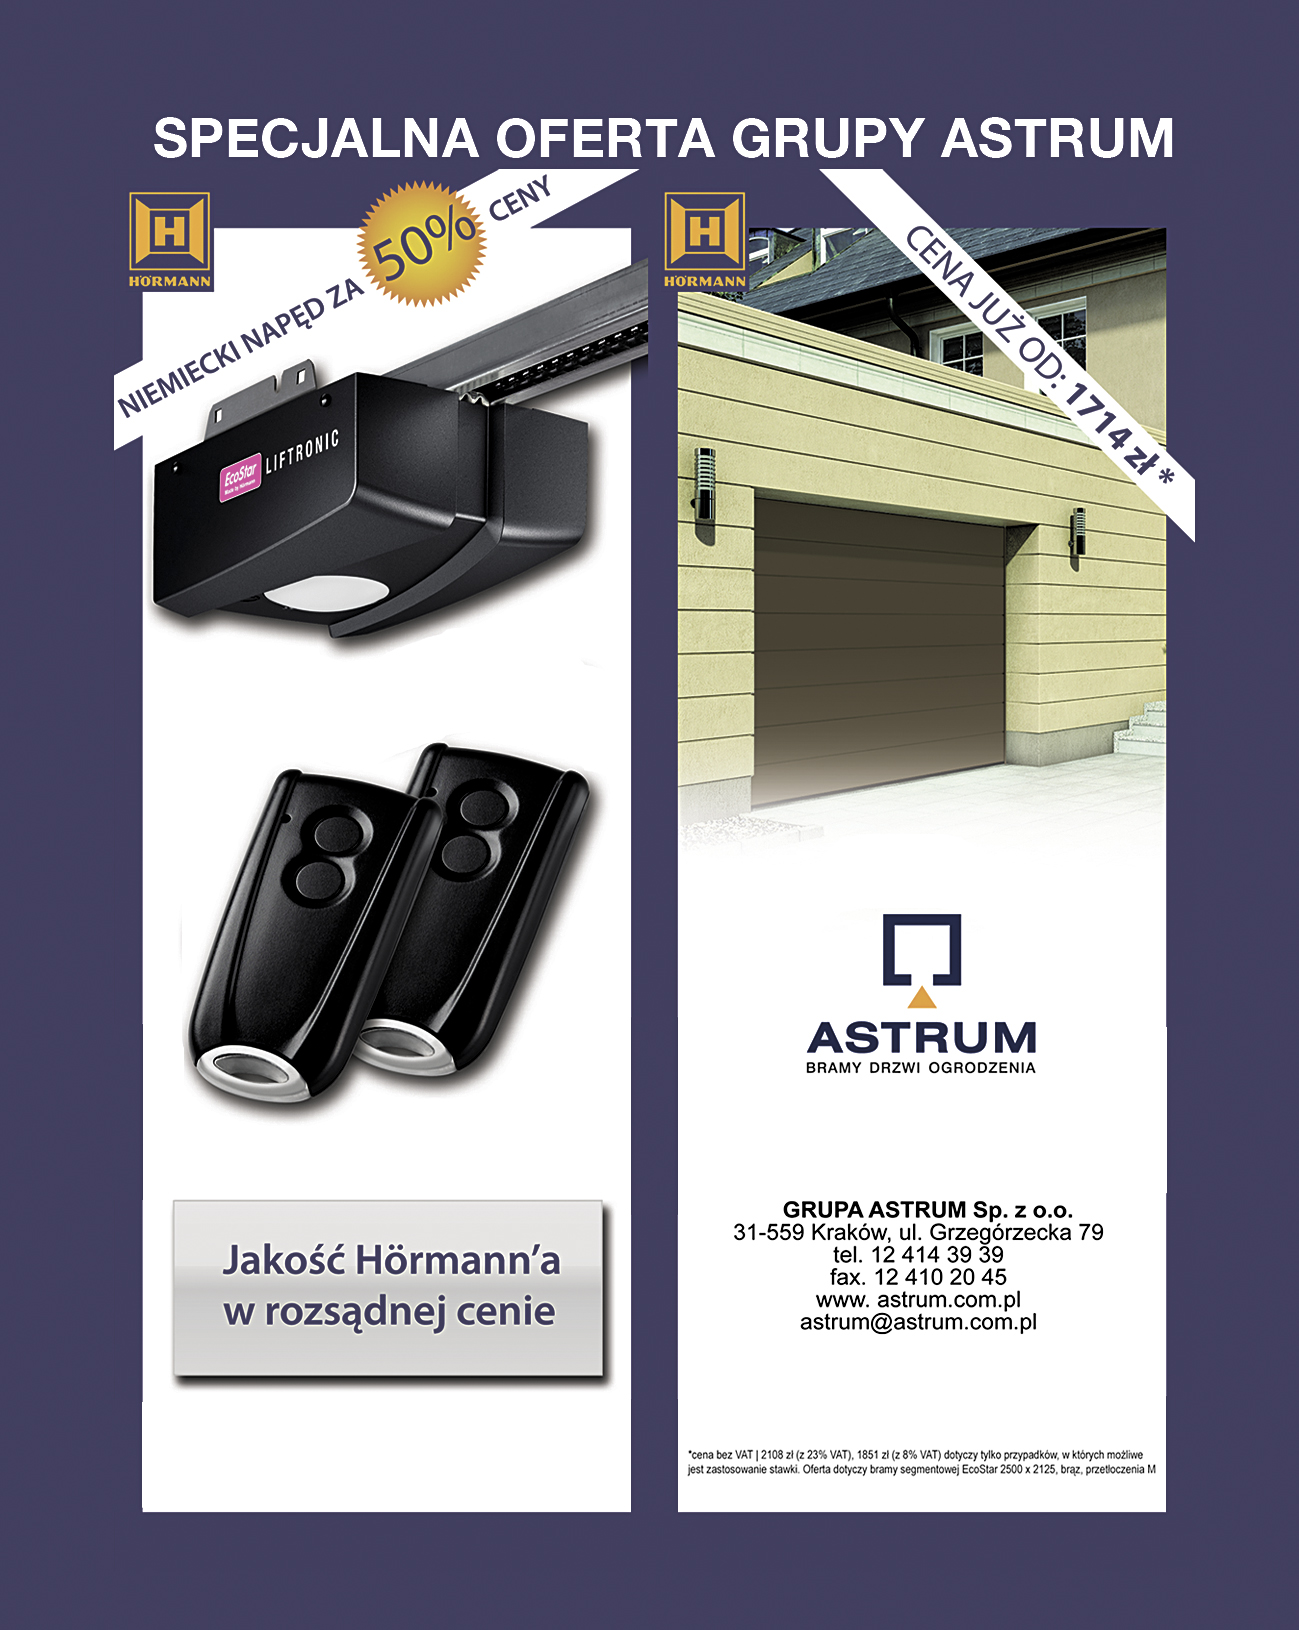 Astrum-Grupa Bramy, napędy, drzwi, ogrodzenia, okna,drzwi wewnętrzne
